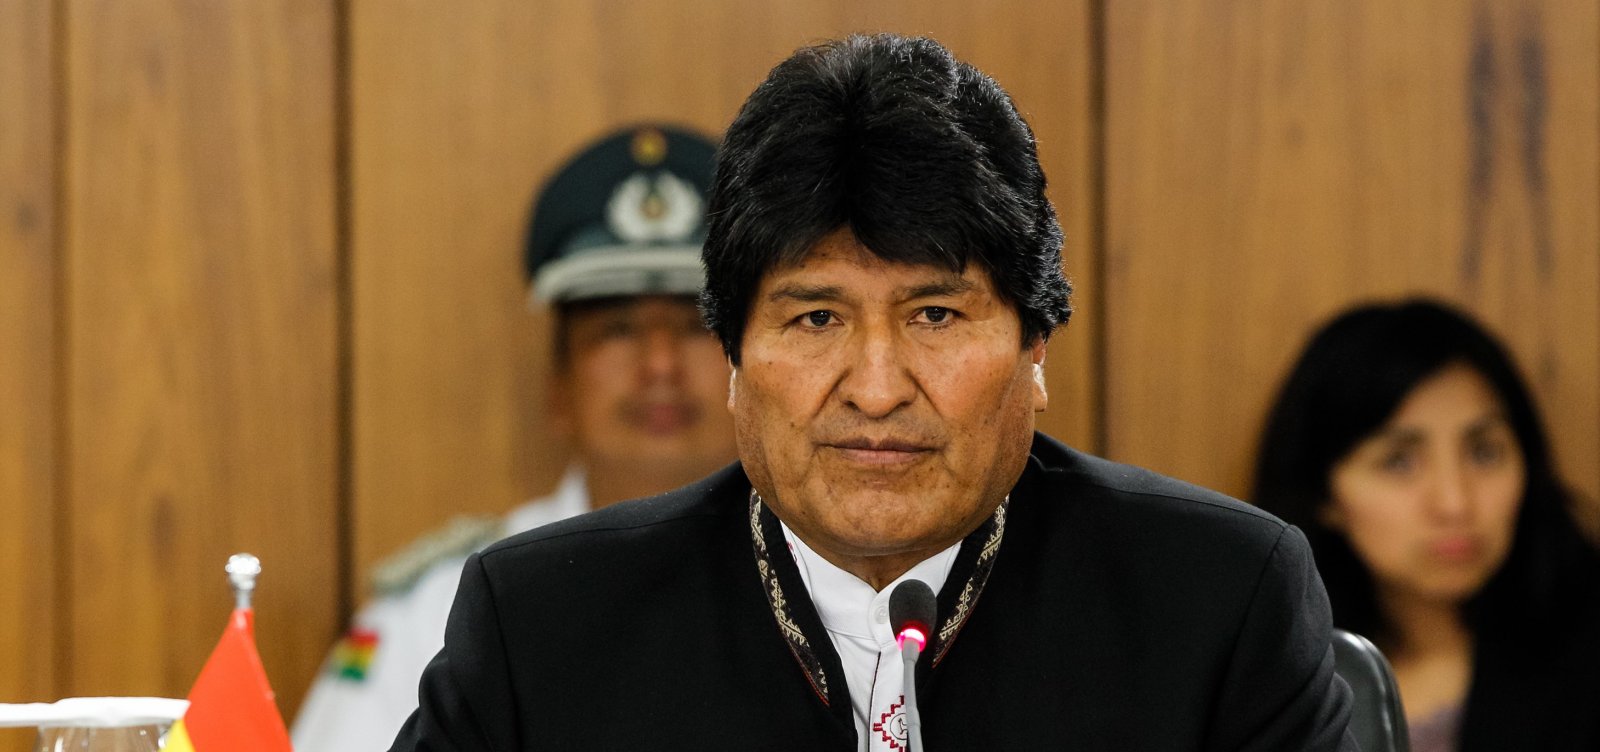 Evo Morales anuncia candidatura à Presidência da Bolívia em meio a tensões com governo